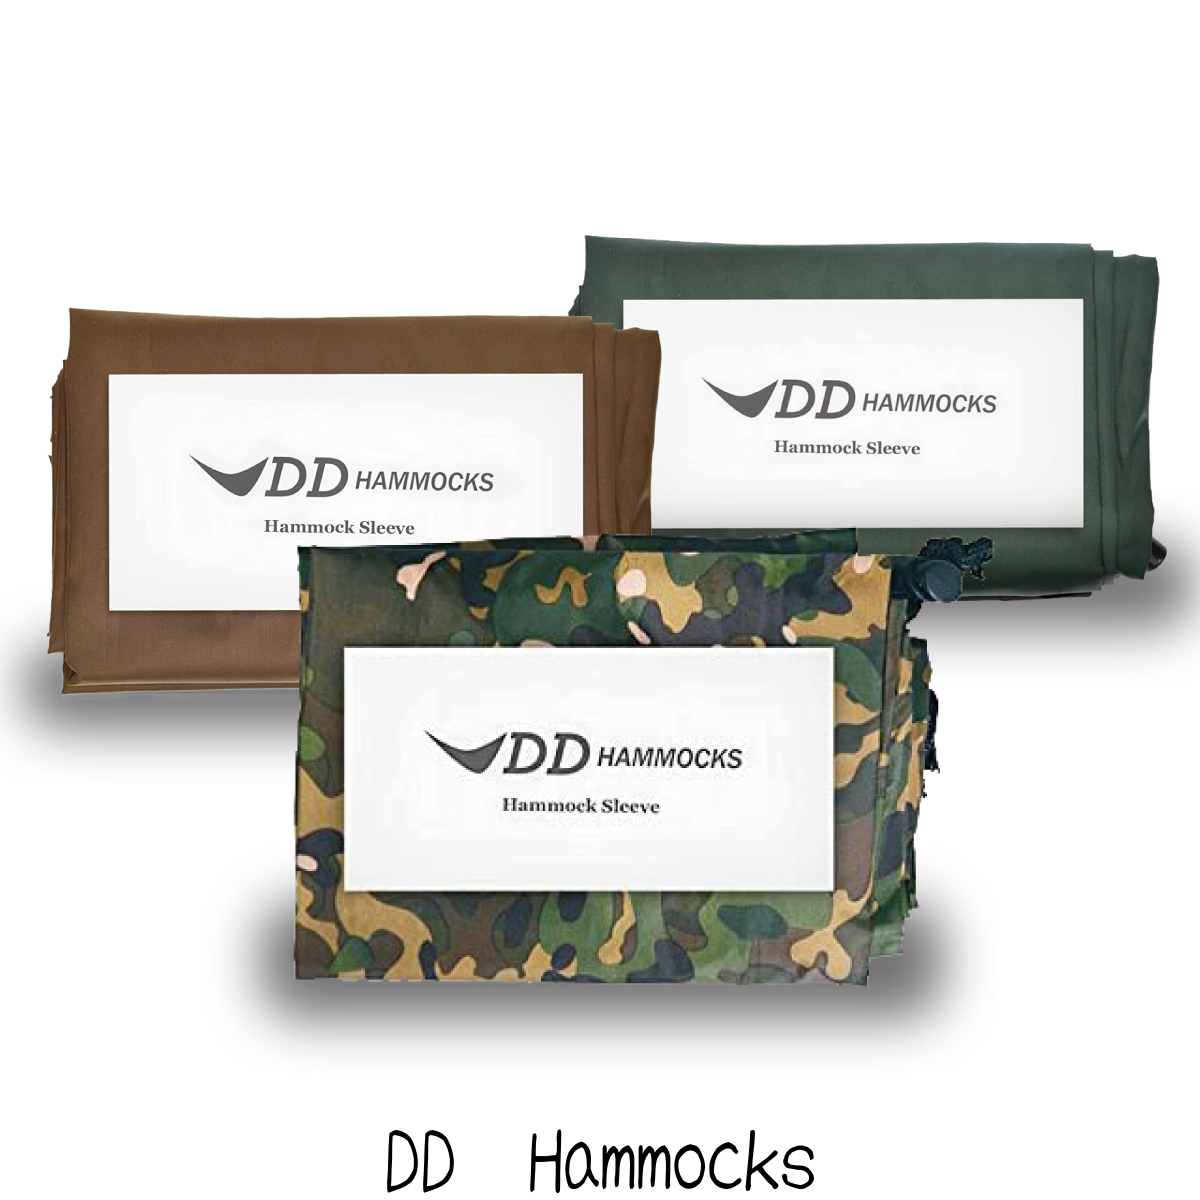 DD Hammock Sleeve ハンモックスリーブ ハンモック用アクセサリー メーカー直輸入品